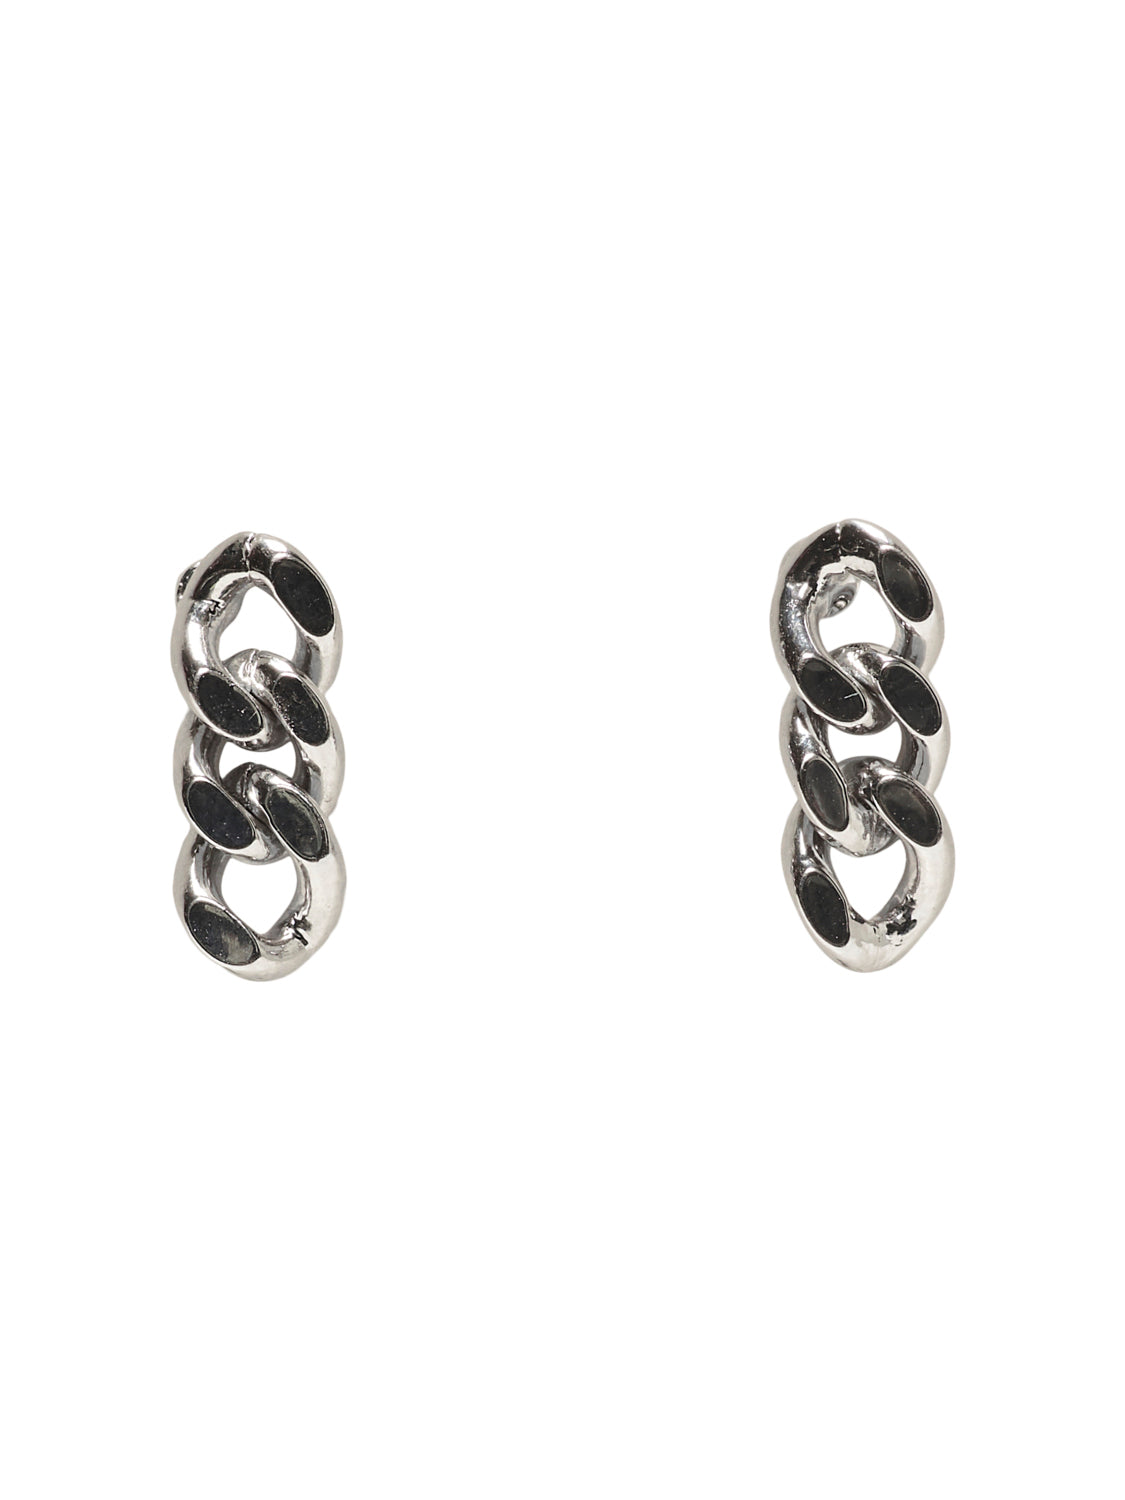 STUSILLE Earrings - Silver